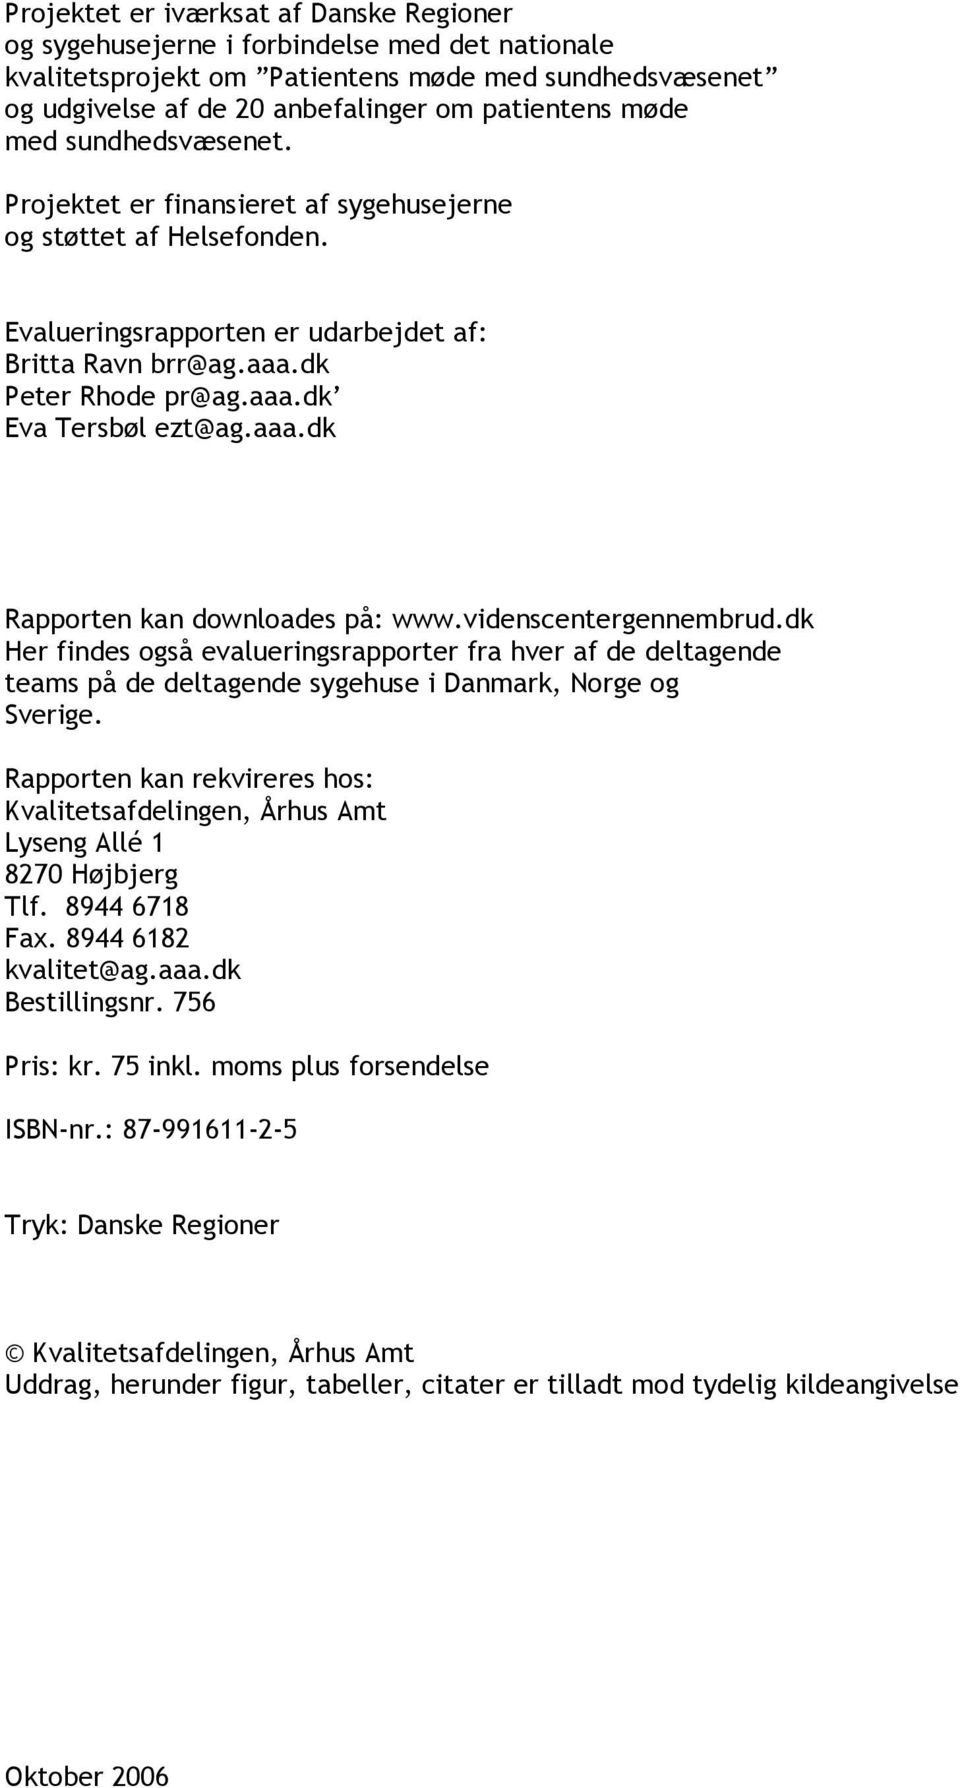 aaa.dk Rapporten kan downloades på: www.videnscentergennembrud.dk Her findes også evalueringsrapporter fra hver af de deltagende teams på de deltagende sygehuse i Danmark, Norge og Sverige.